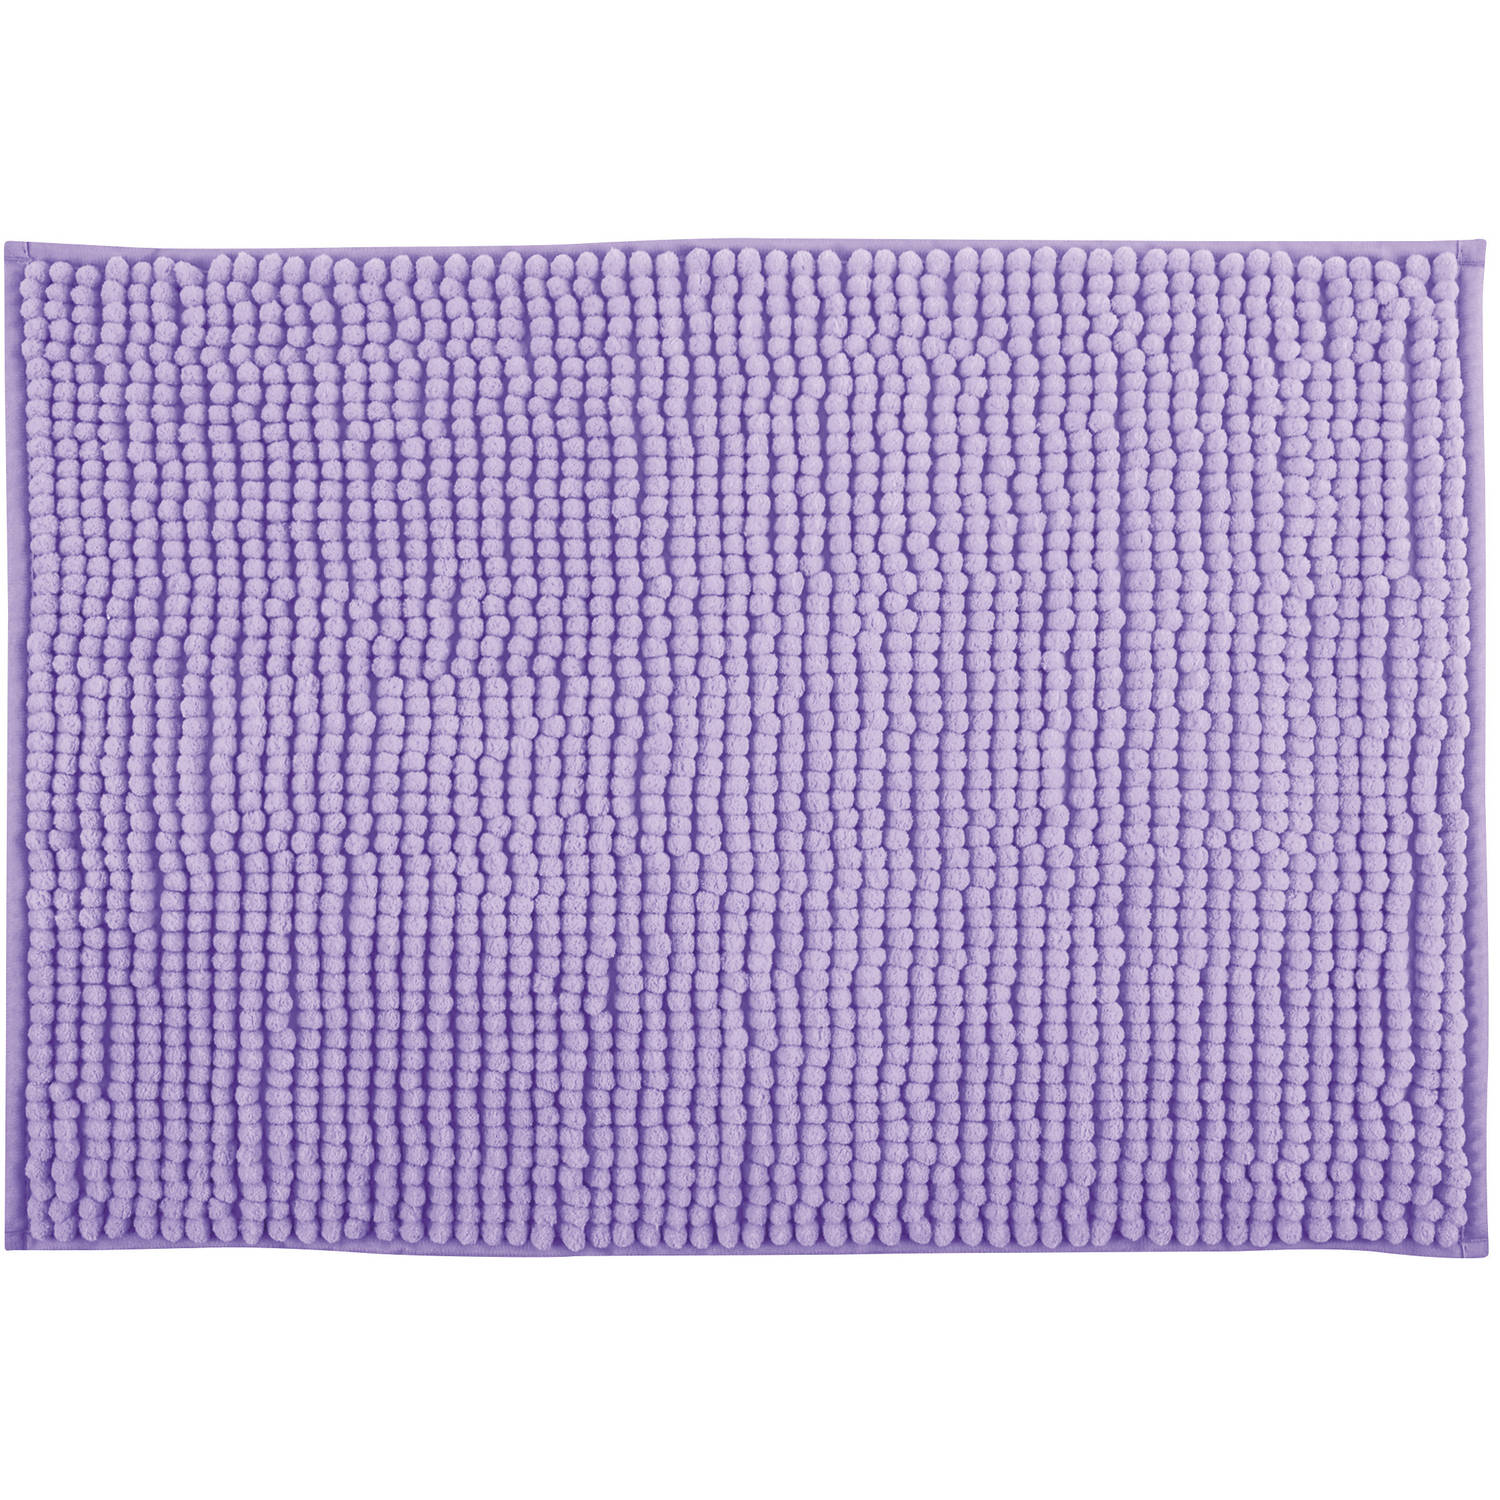 MSV Badkamerkleed/badmat tapijtje voor op de vloer - lila paars - 50 x 80 cm - Microvezel - anti slip